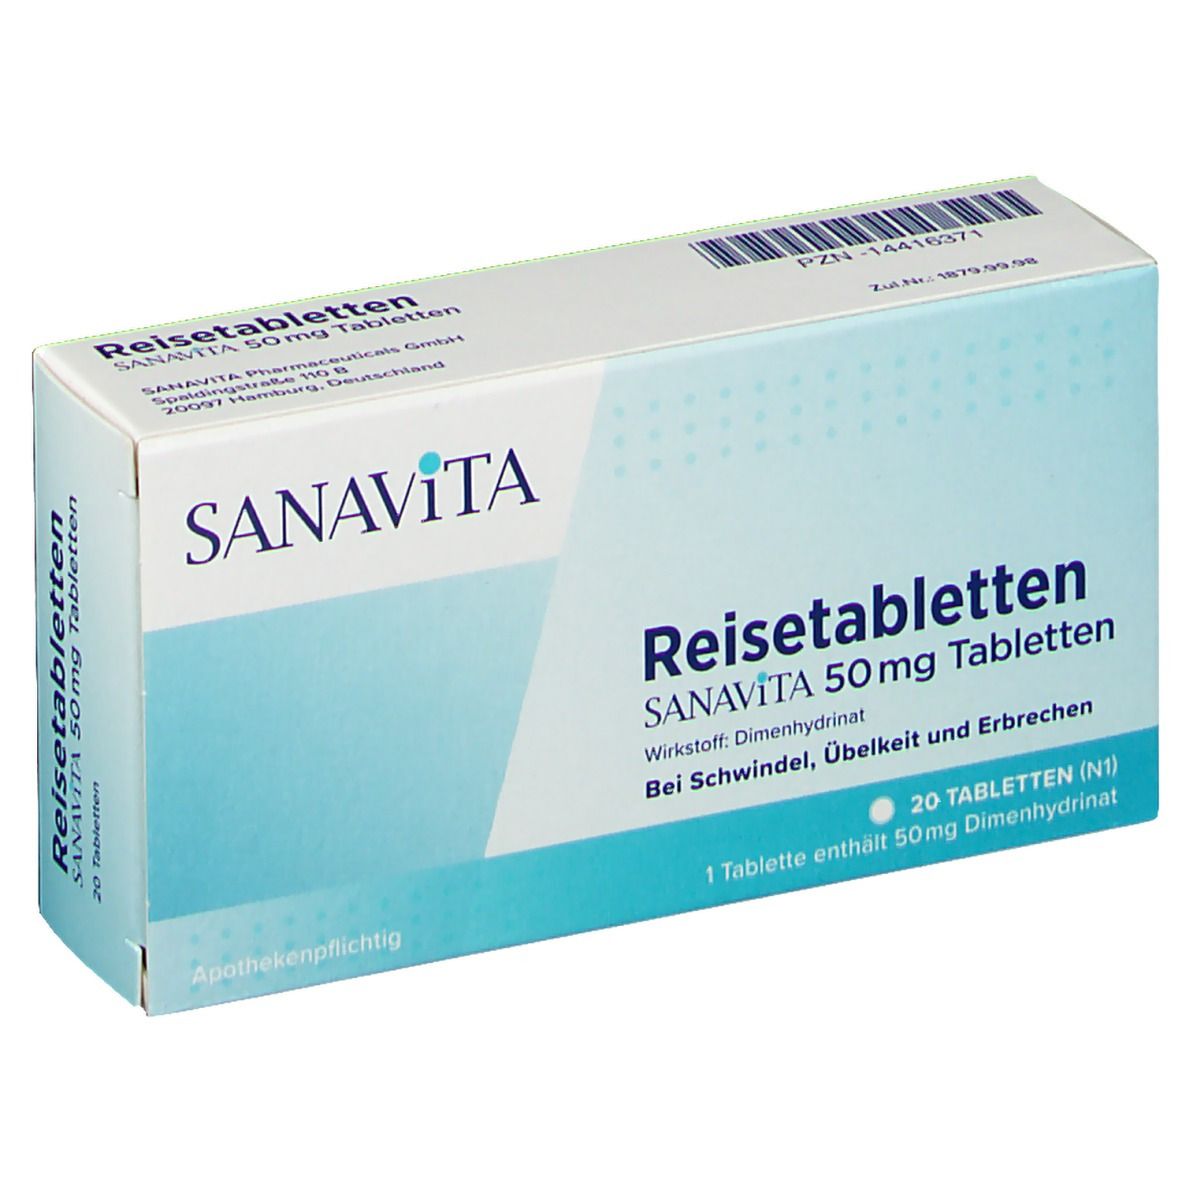  Reisetabletten SANAVITA 50 mg